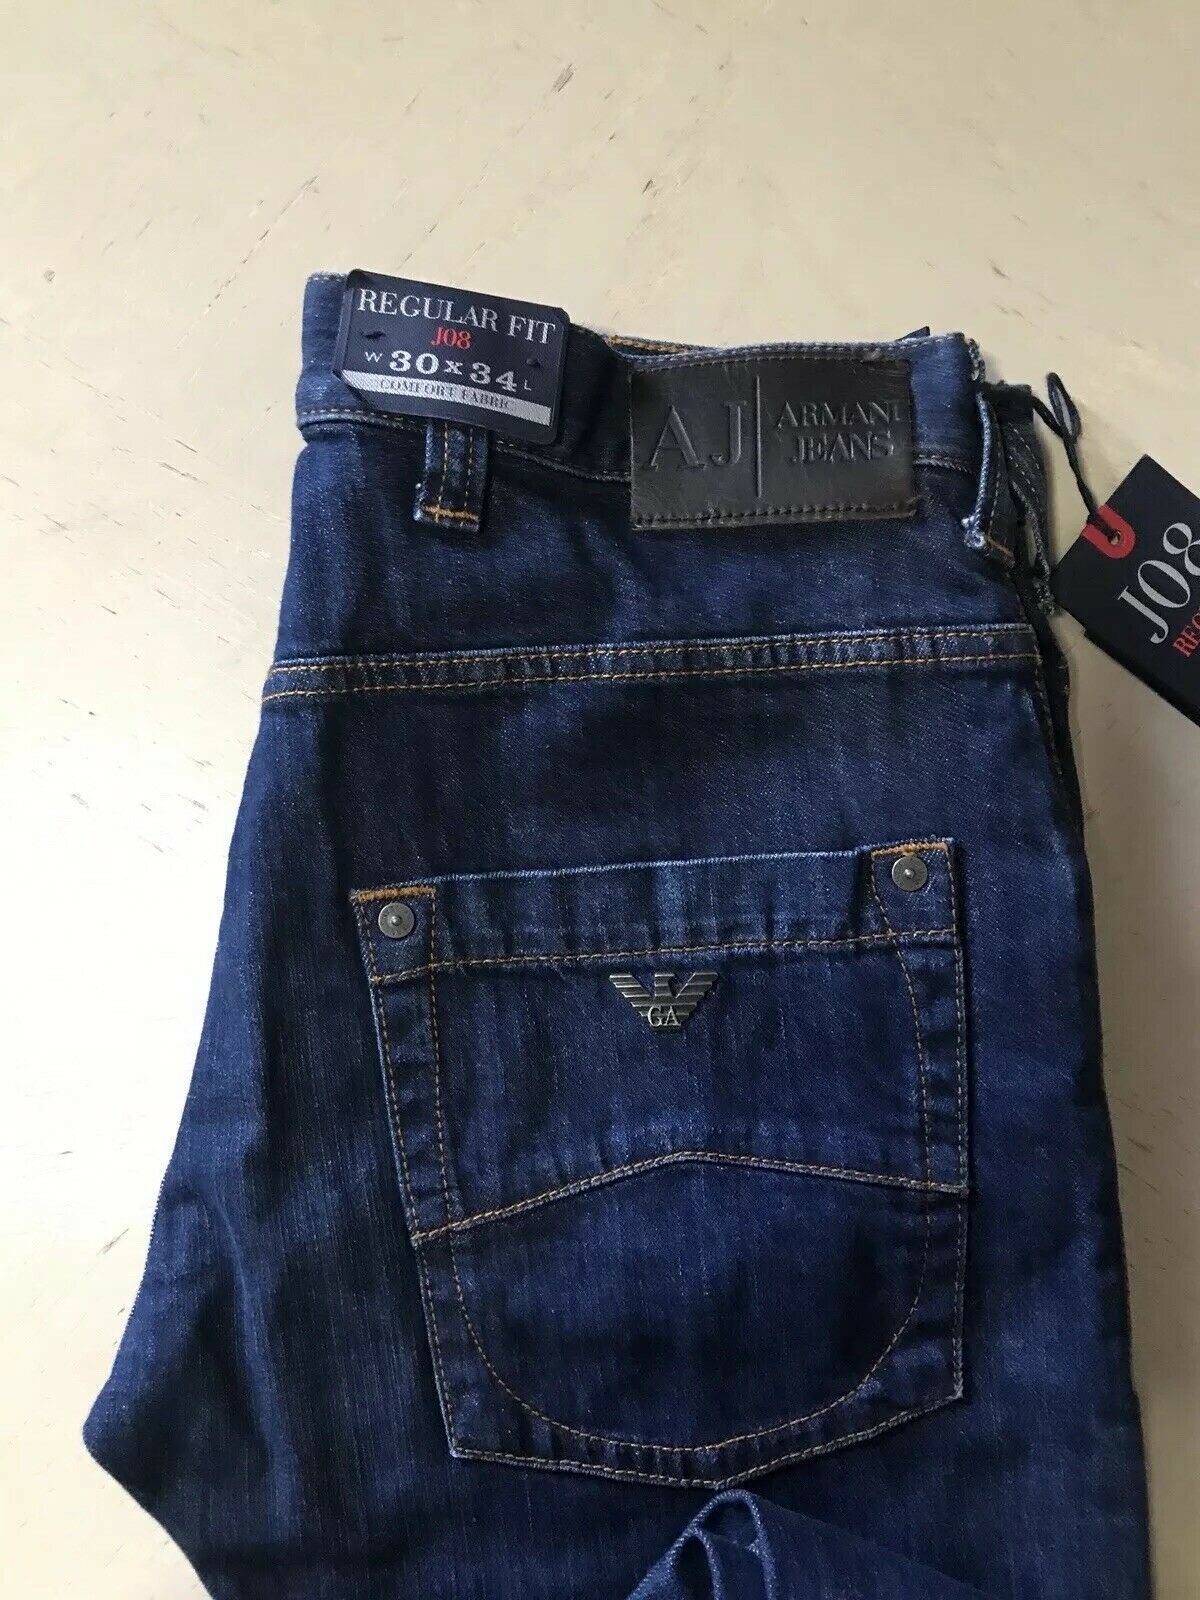 armani jeans j08 regular fit